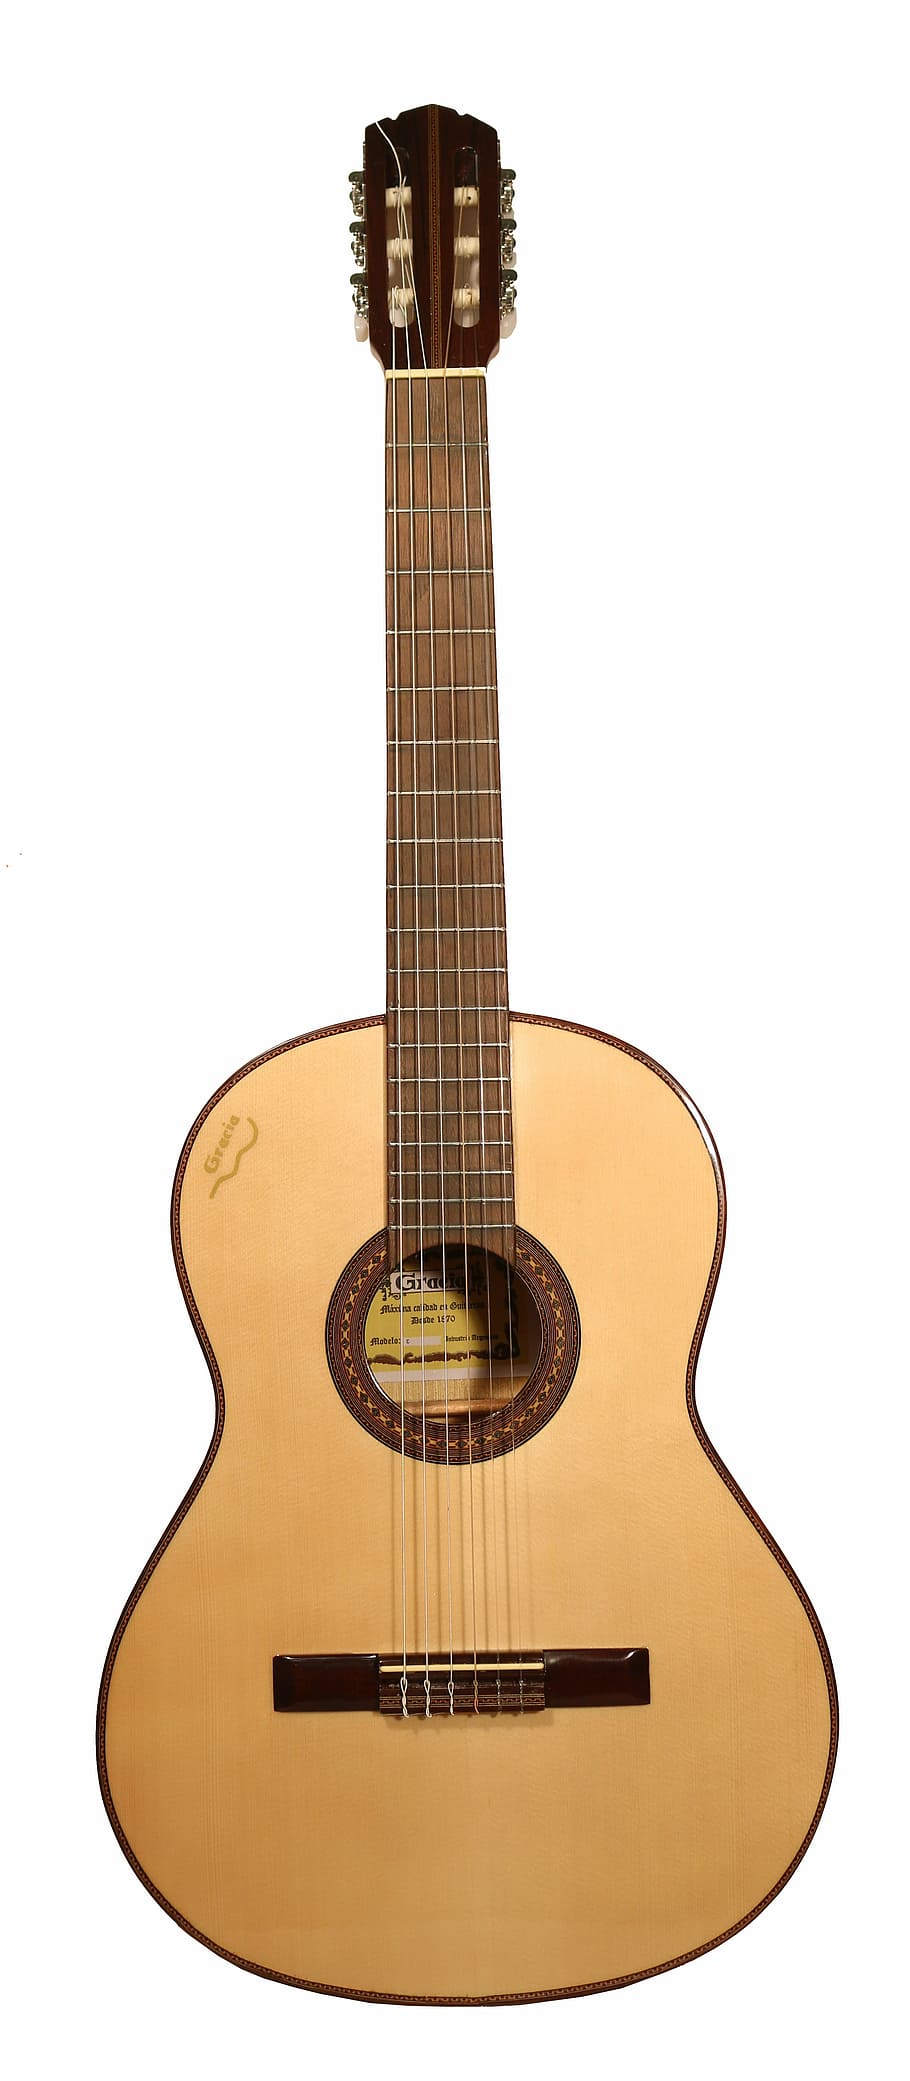 marrom, clássica, violão, branco, fundo, clássico, luthier, espanhol, diapasão, caixa